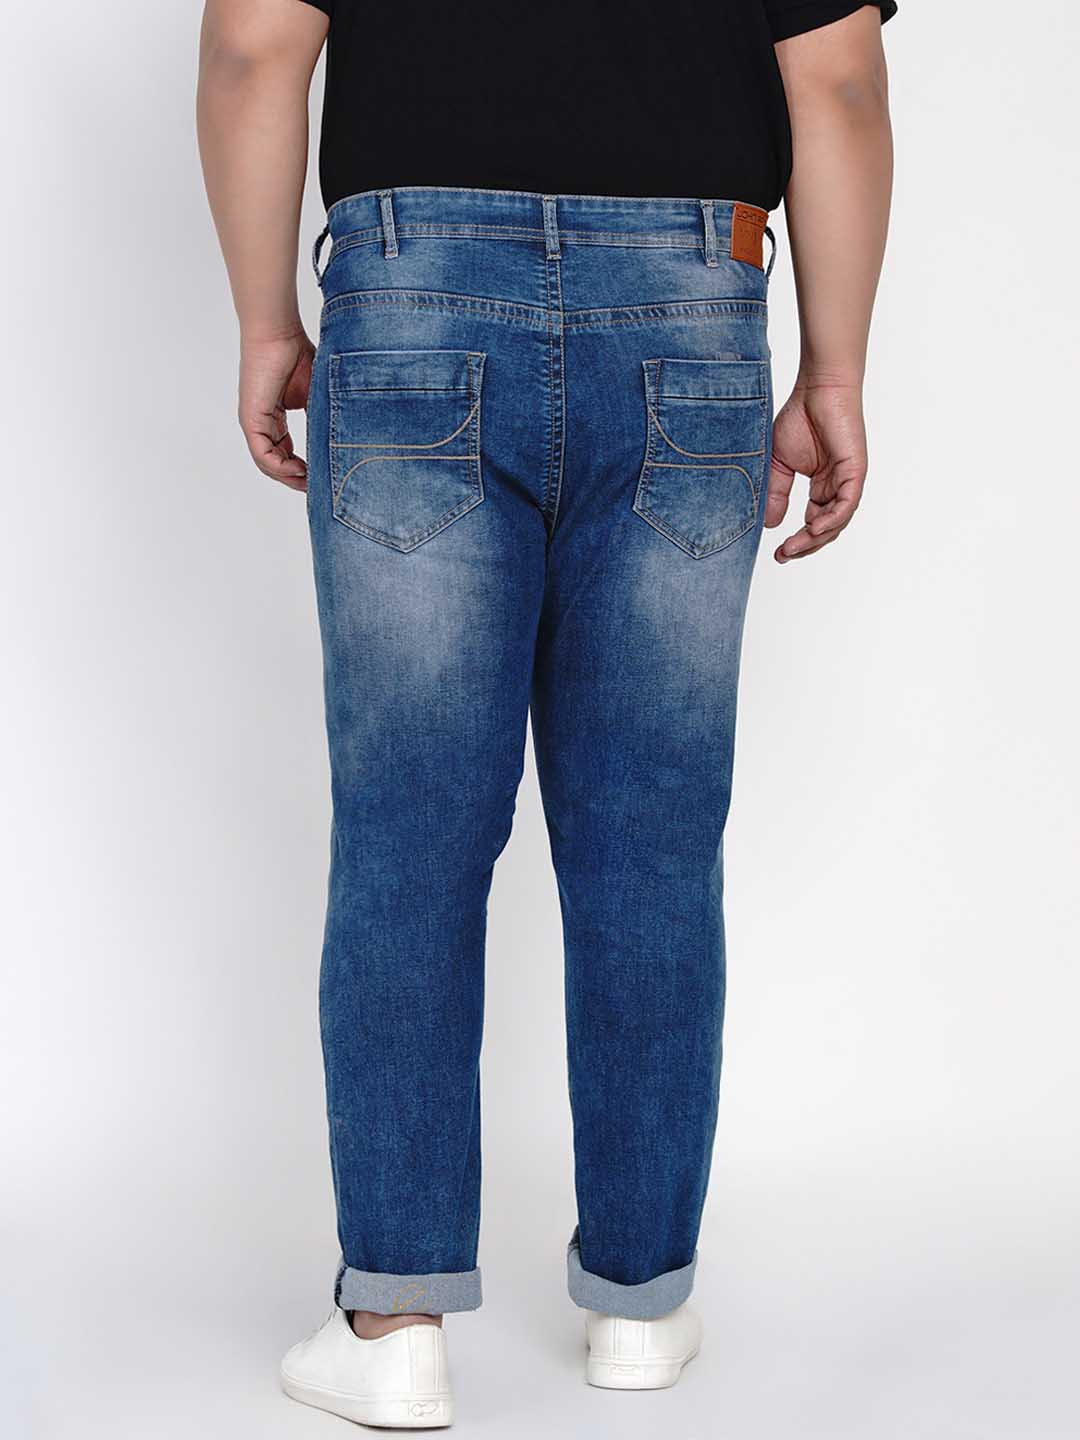 bottomwear/jeans/JPJ12122/jpj12122-4.jpg